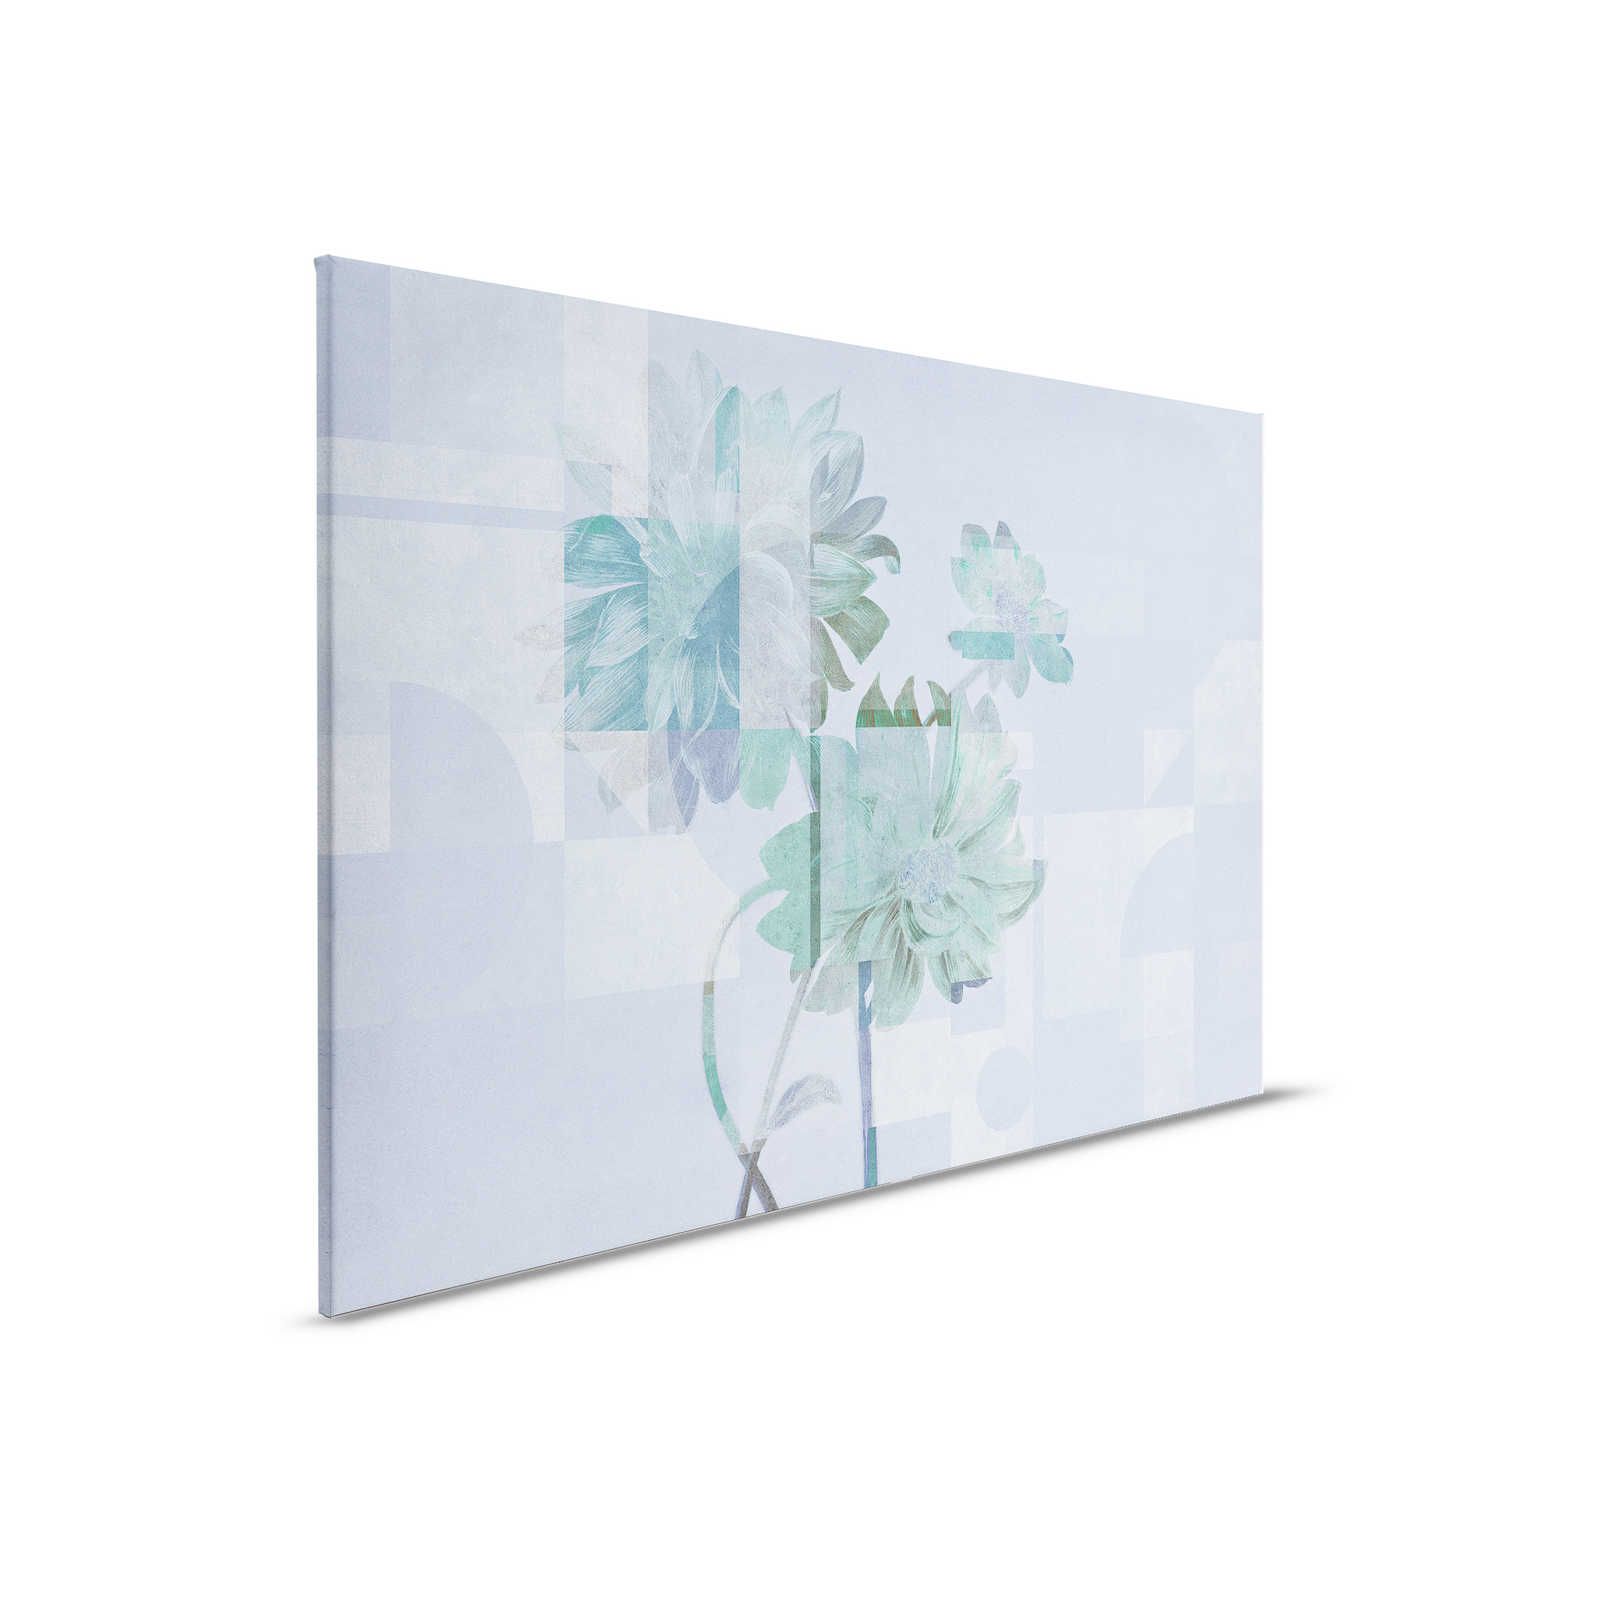 Queens Garden 1 - Bloemrijk Canvas schilderij blauwe margrieten & grafisch patroon - 0.90 m x 0.60 m
